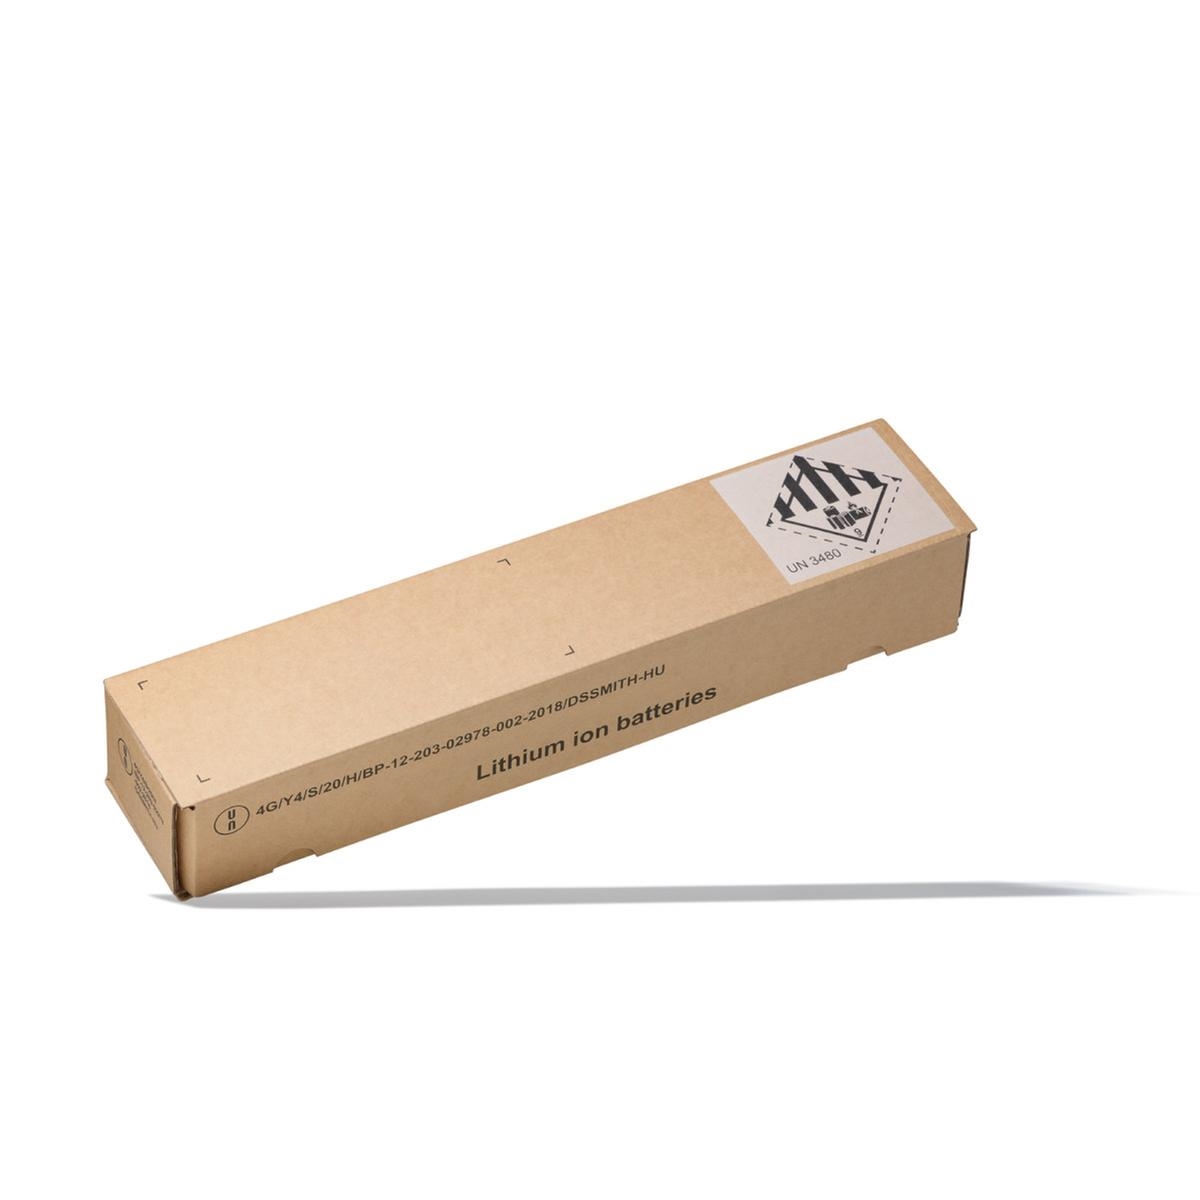 PowerTube 750wh battery dangerous goods transport packaging